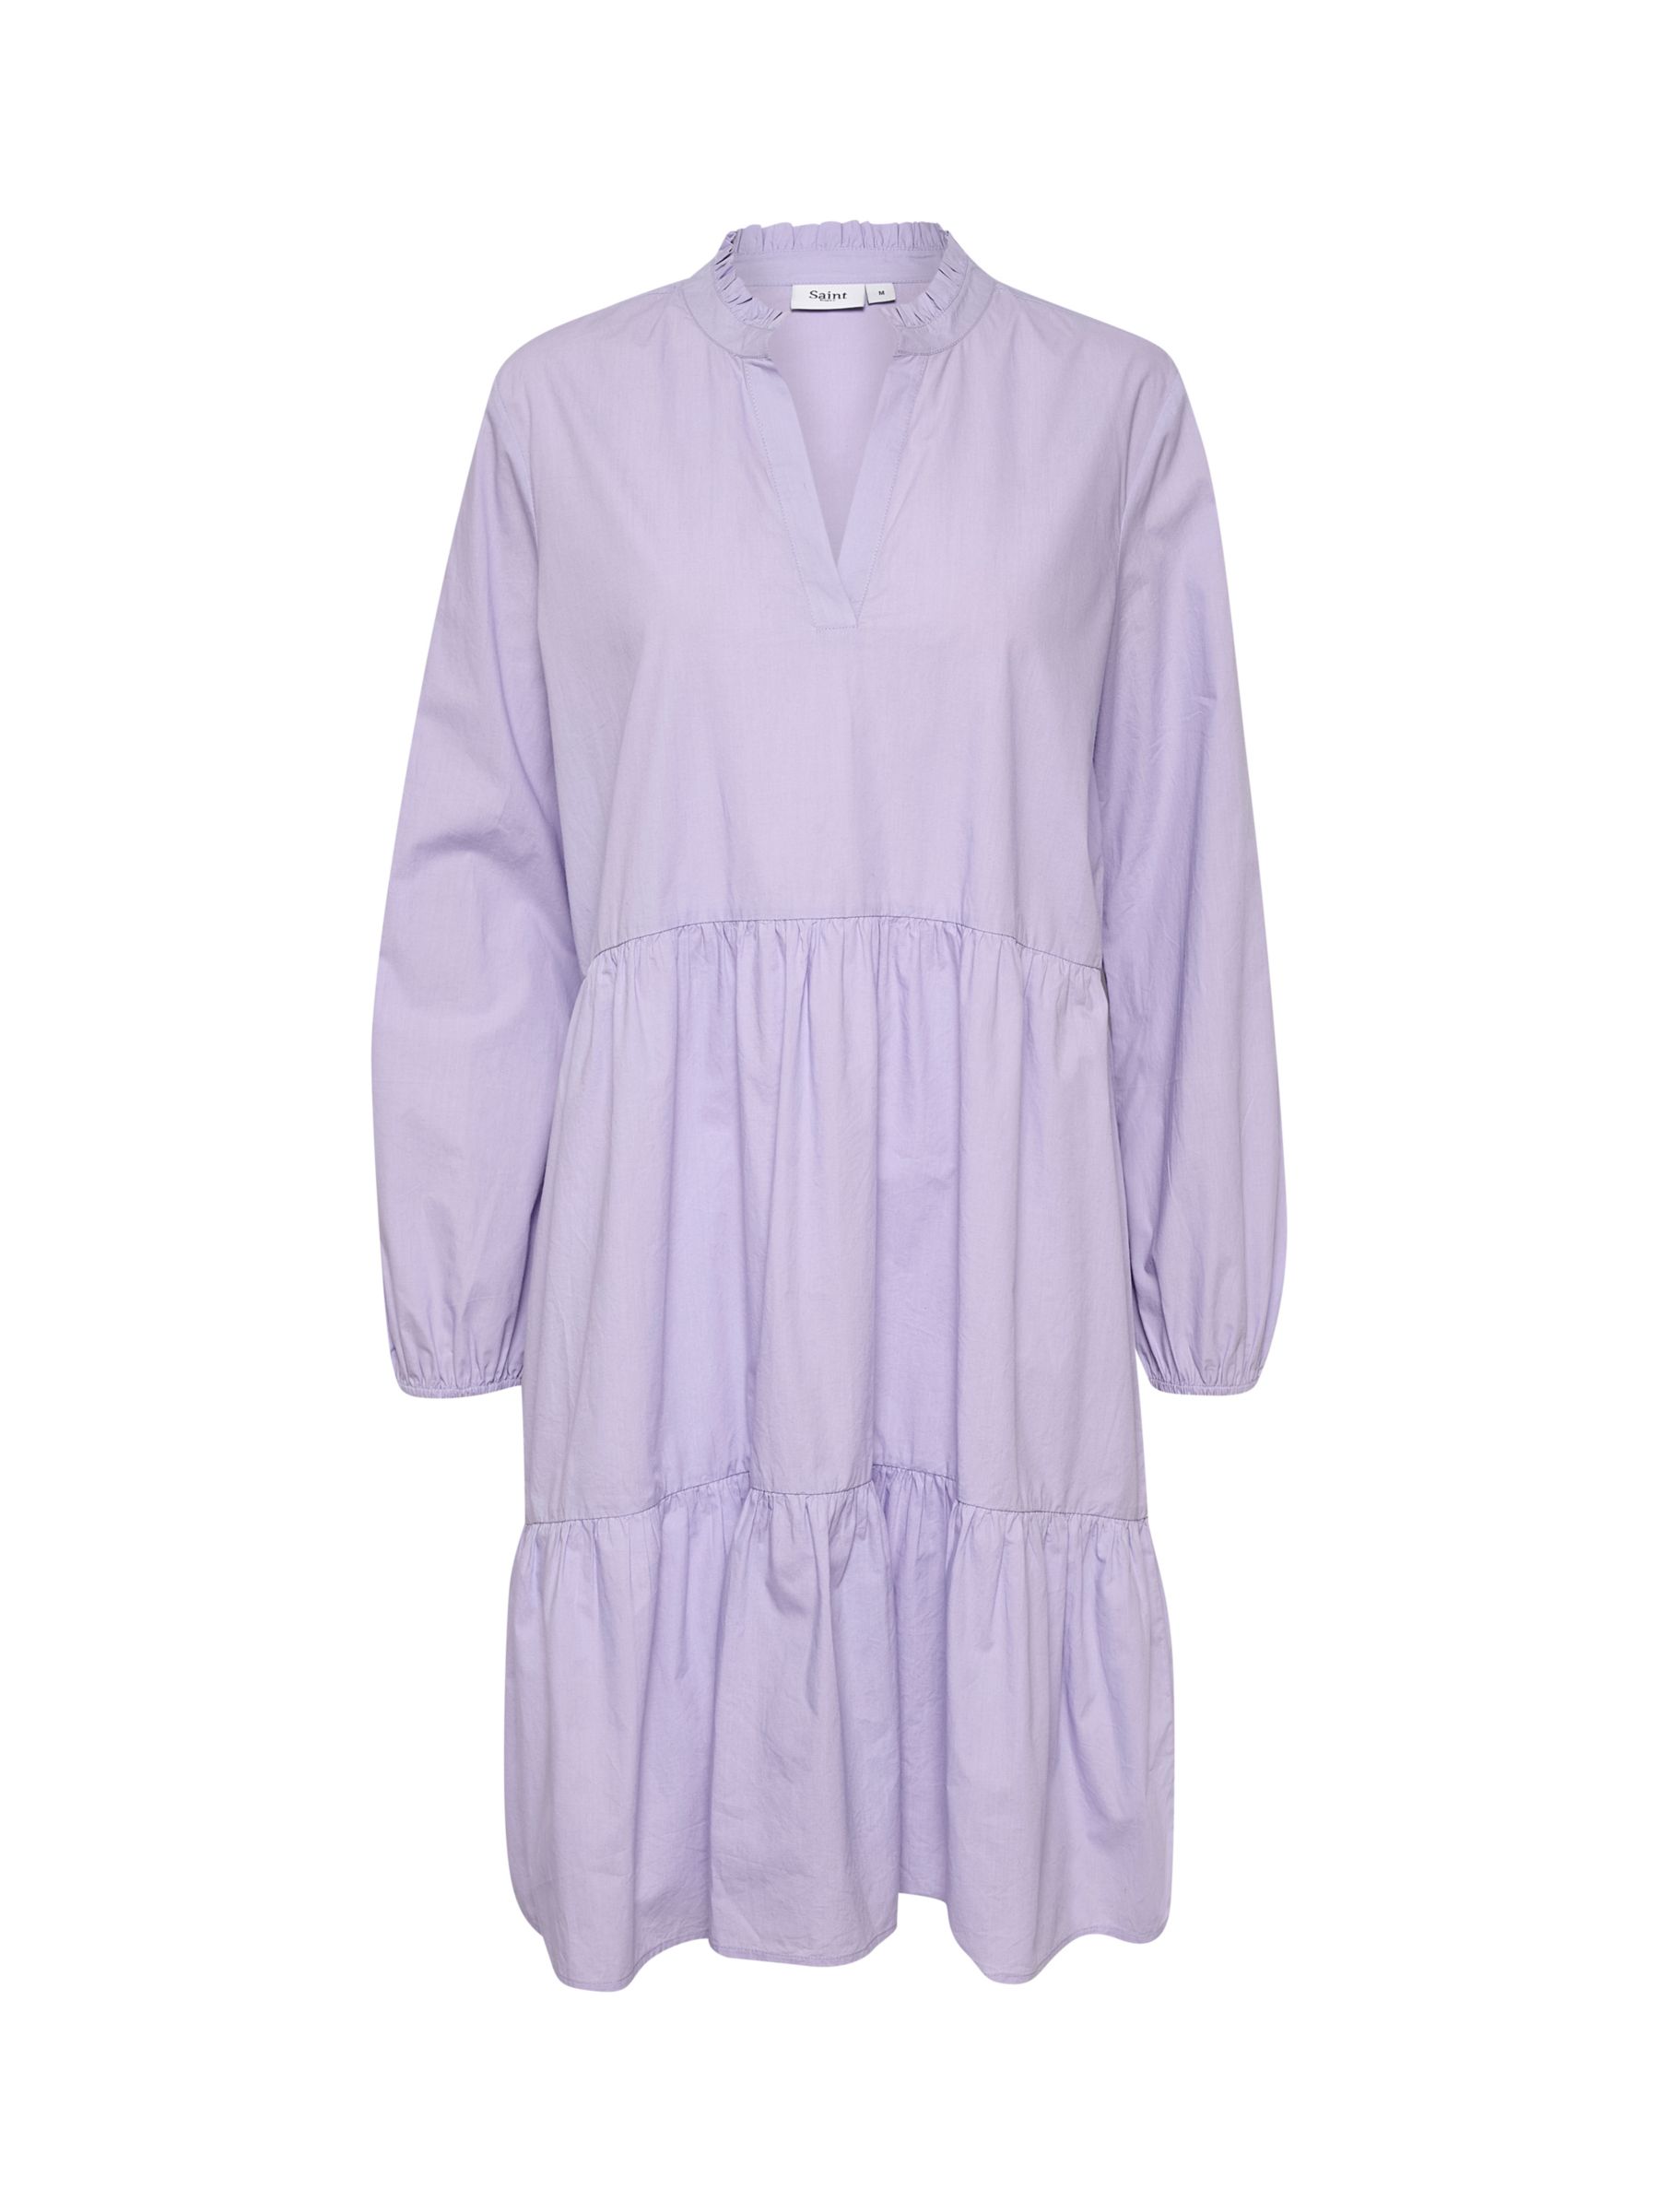 Saint Tropez Louise Dress, Lavender, L